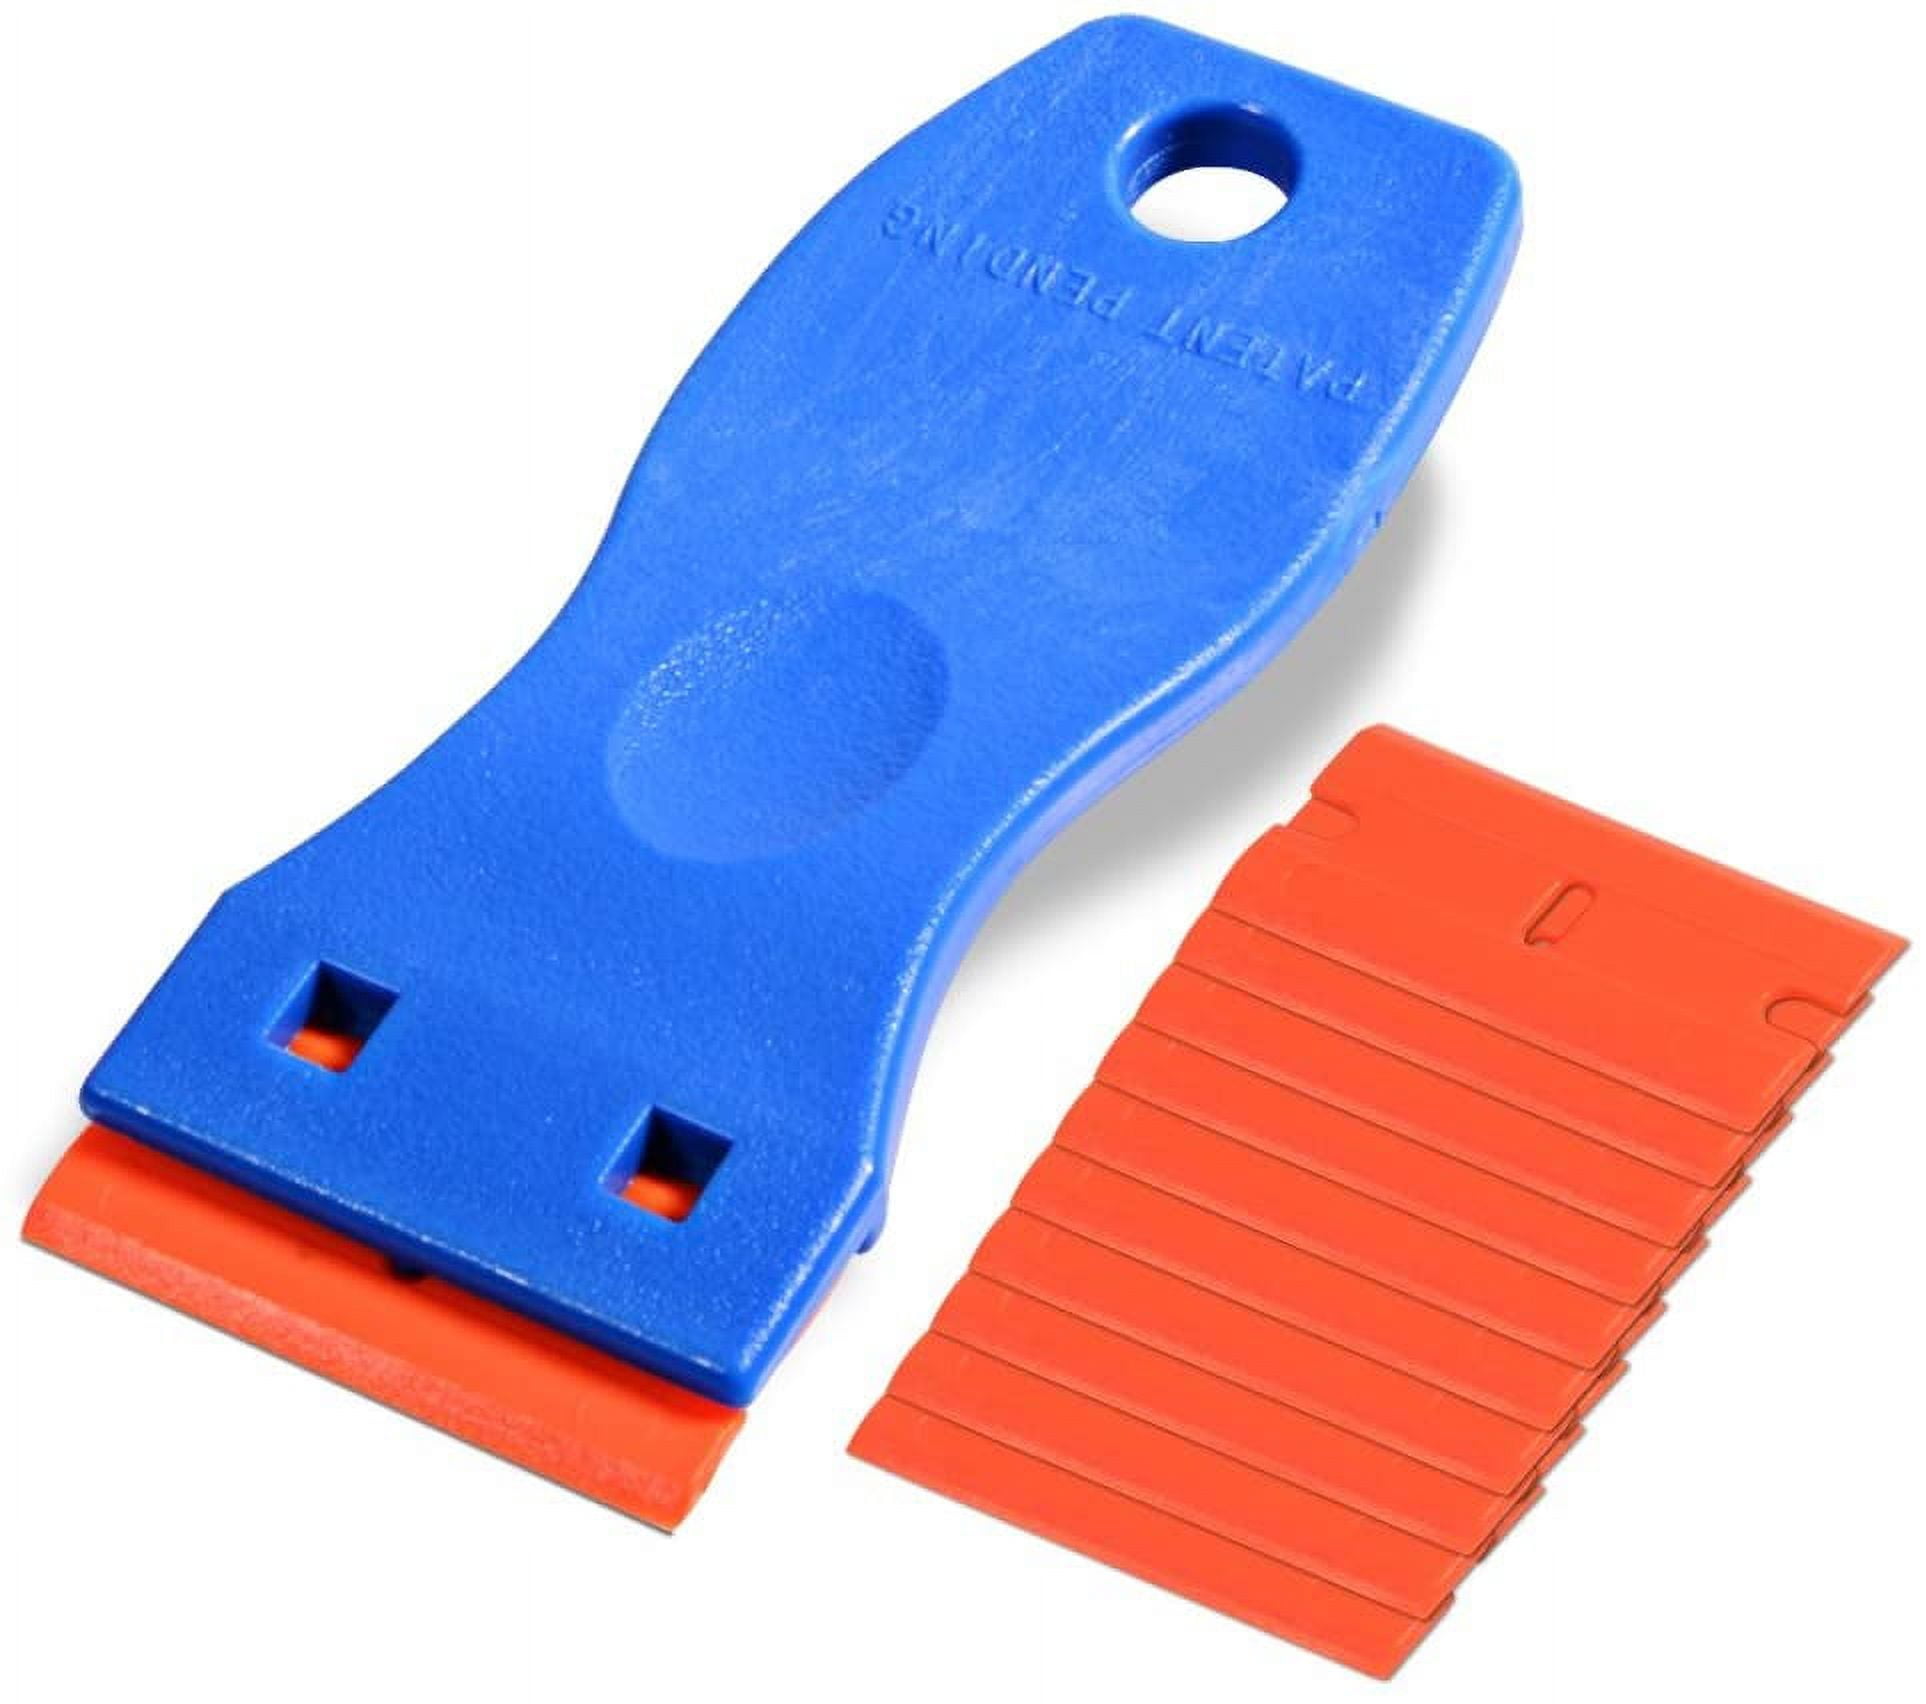  FOSHIO 20PCS Blue Plastic Razor Blade Scraper Tool for